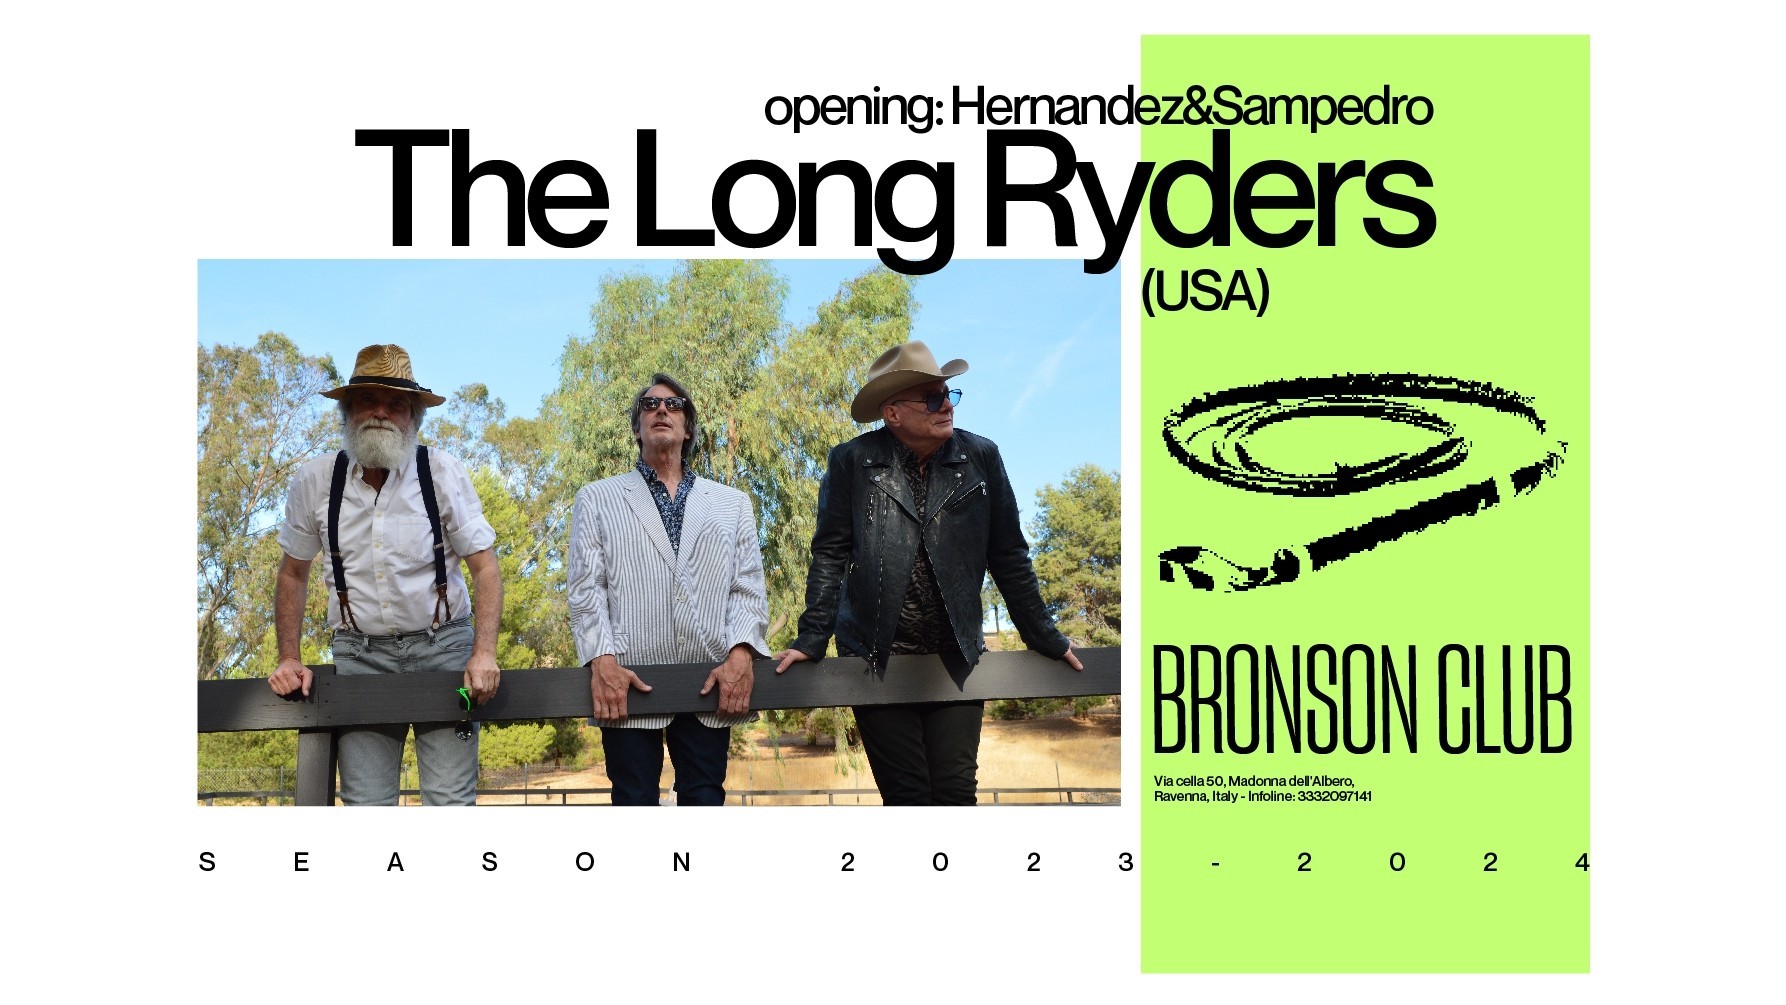 The Long Ryders + Hernandez & Sampedro